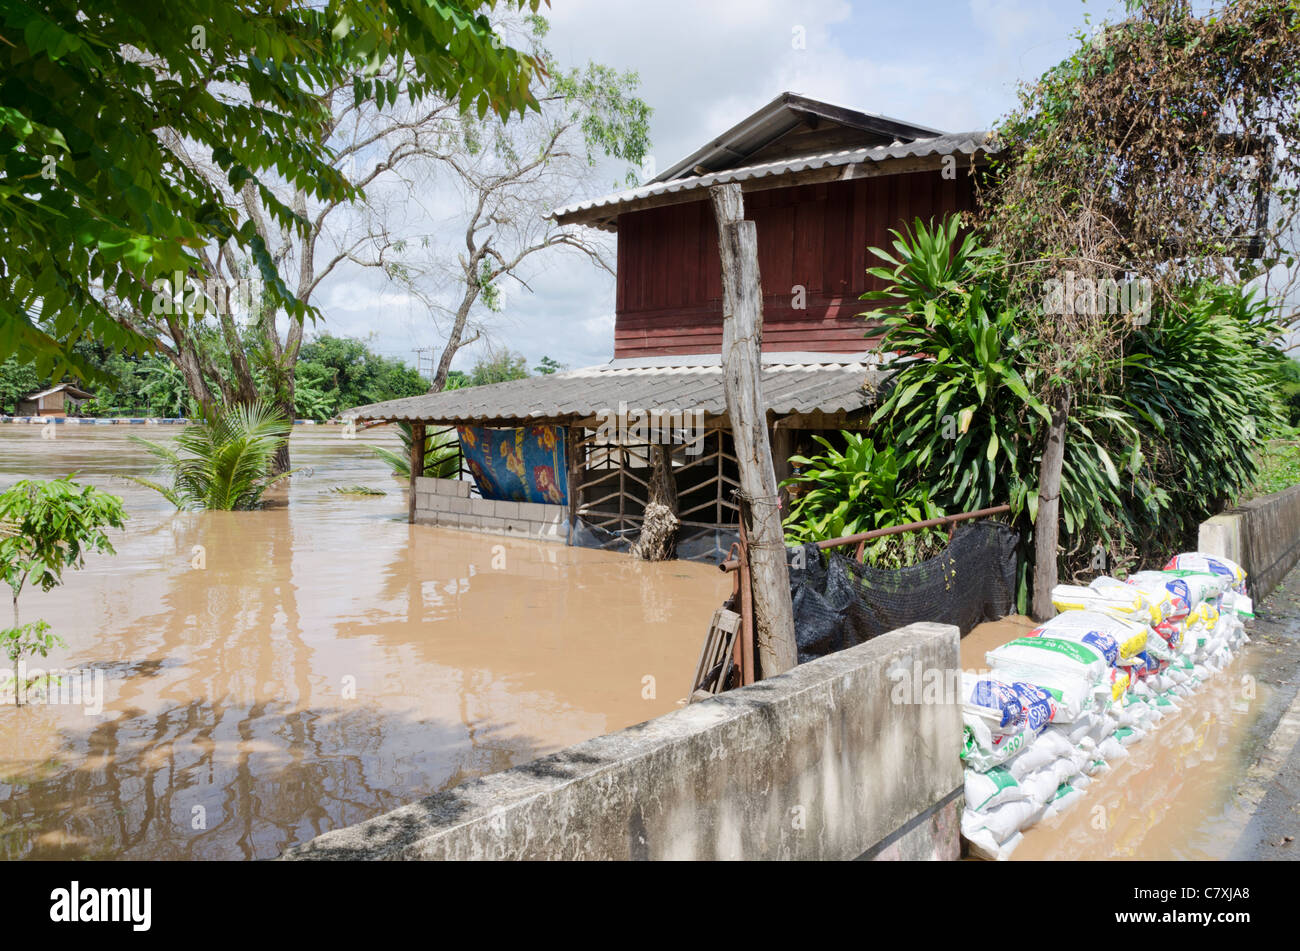 Inondato due piani di casa con la barriera di cemento e sabbia bloccando acque alluvionali al fiume Ping a sud di Chiang Mai Thailandia Foto Stock